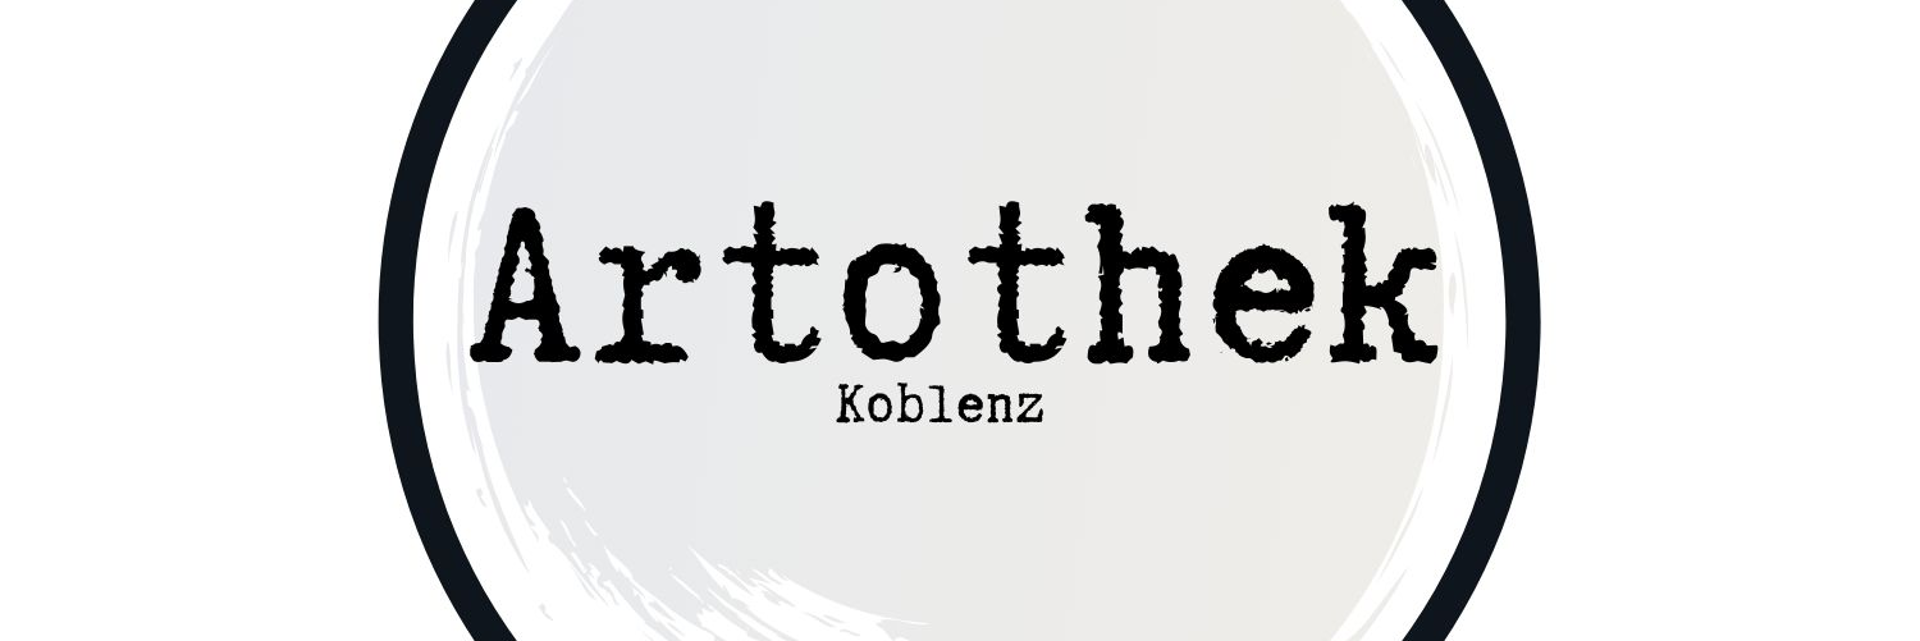 artothek Koblenz